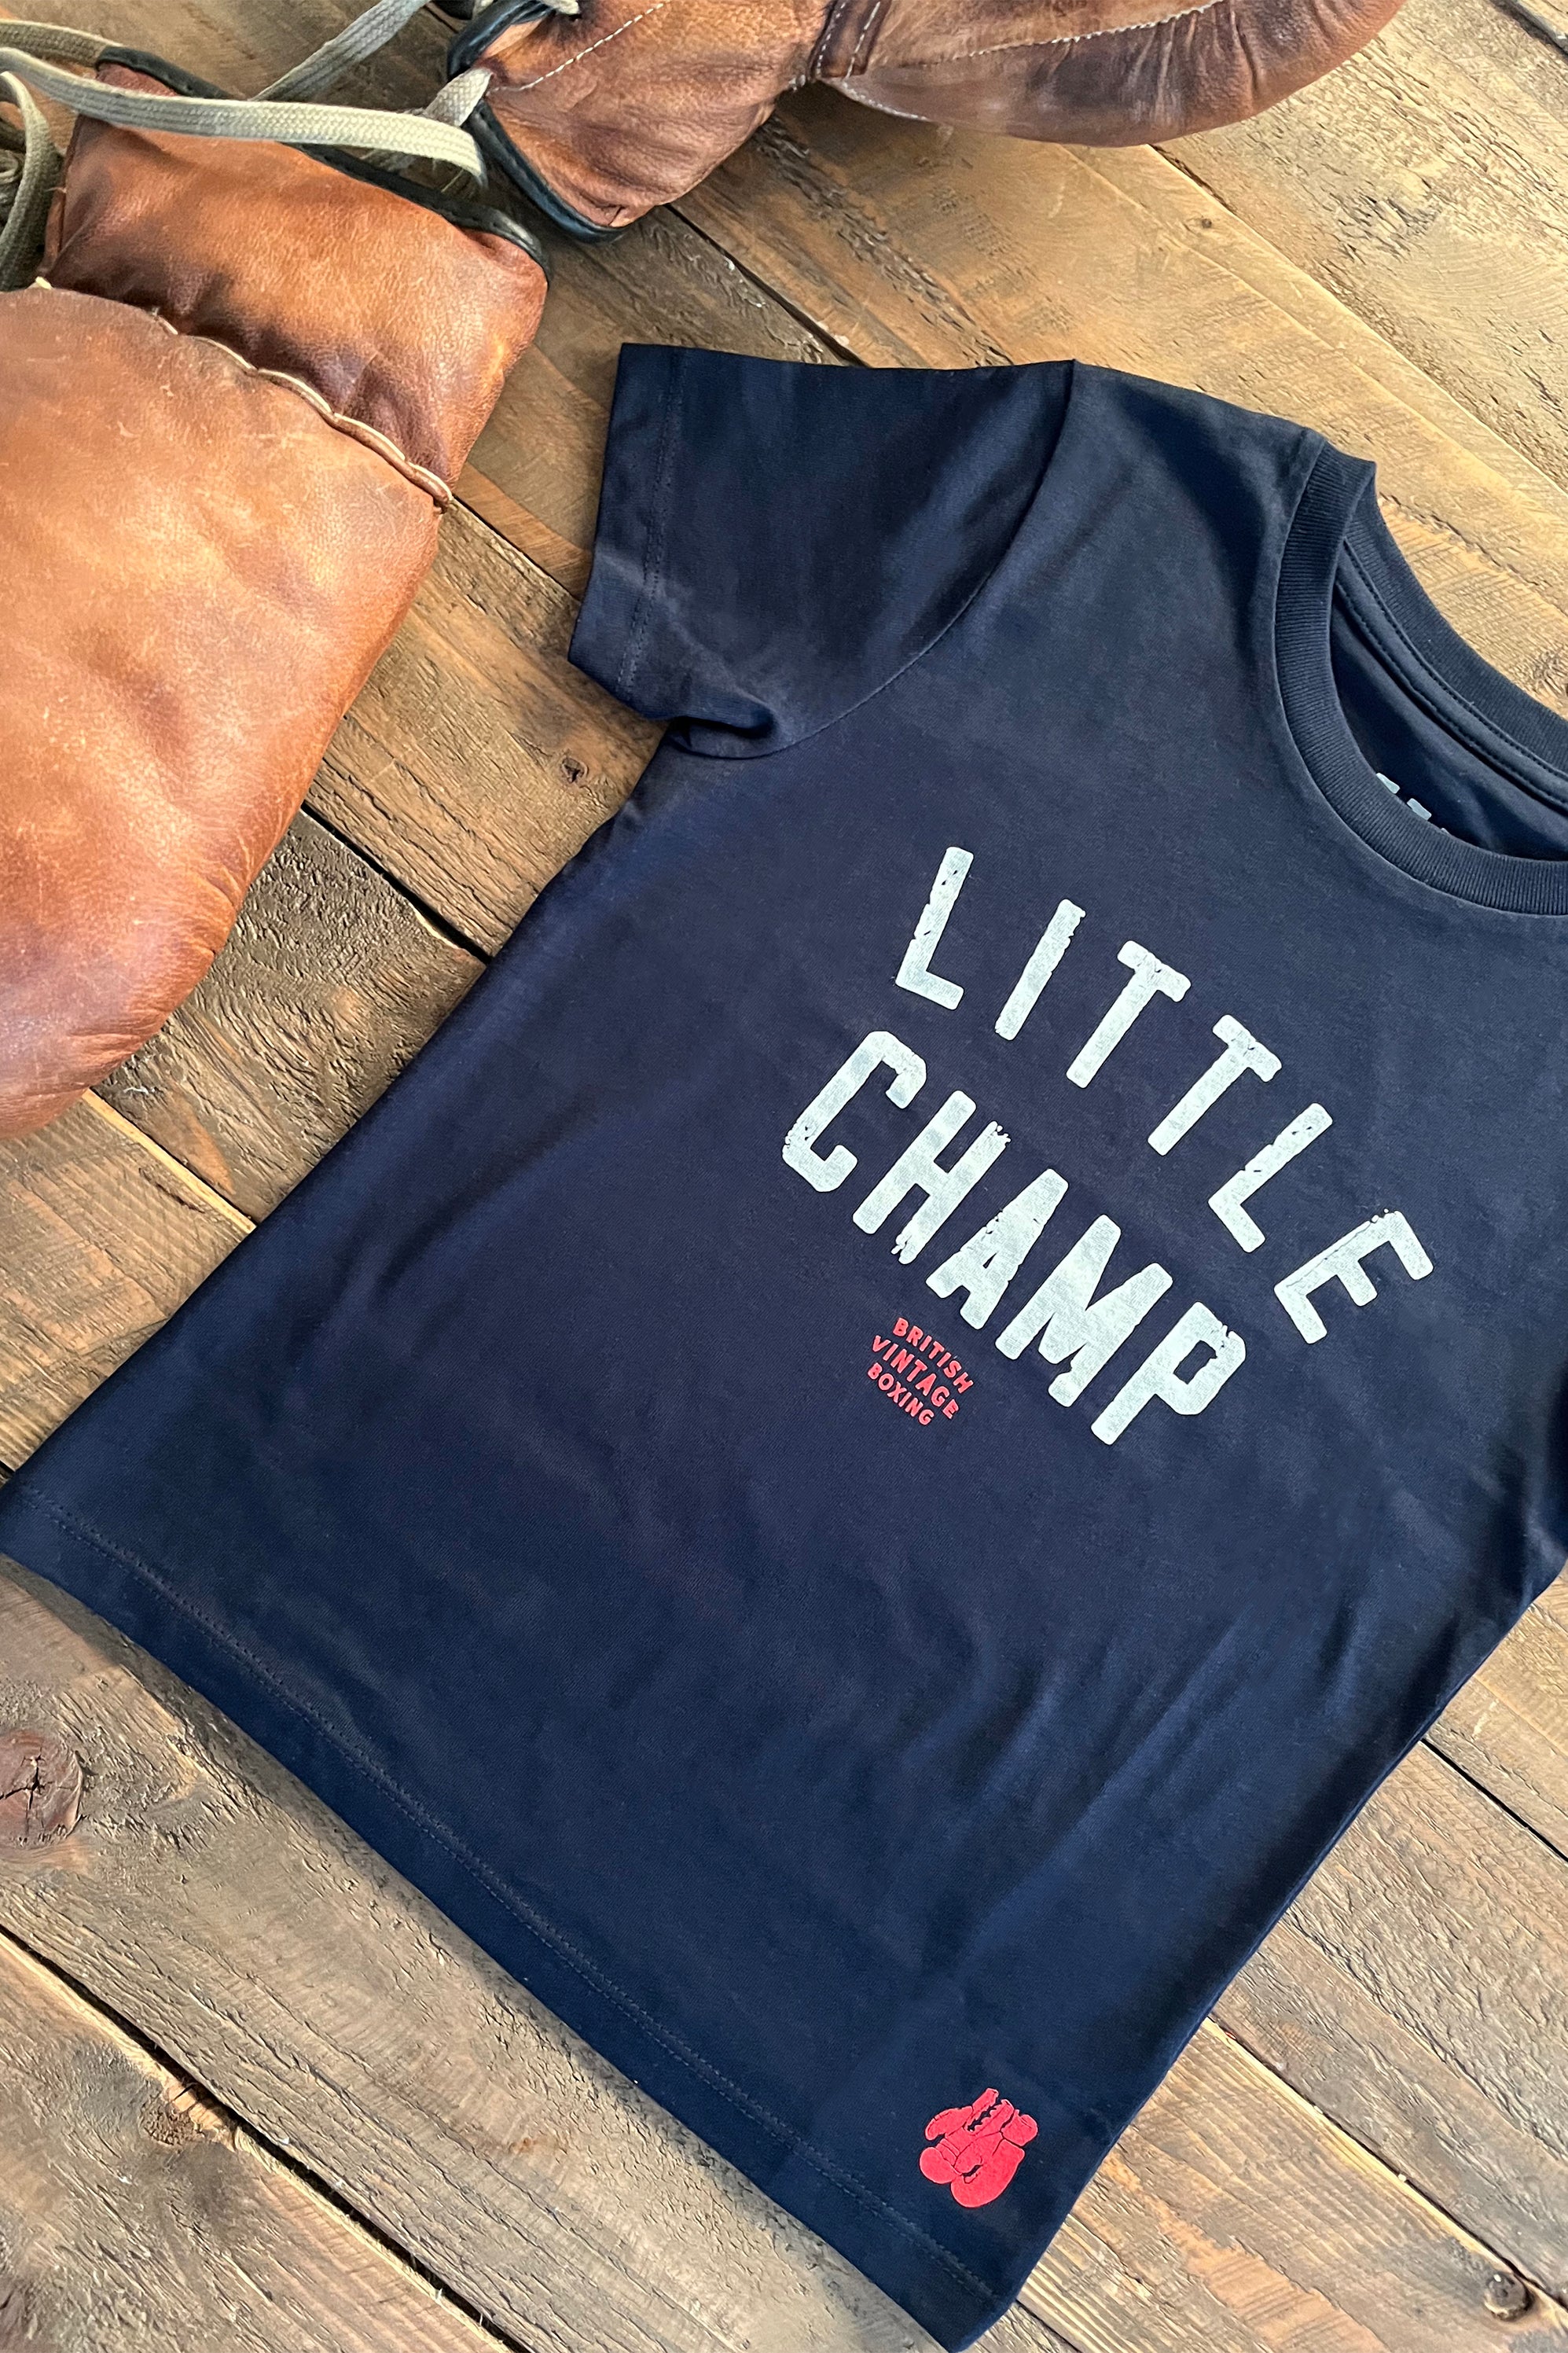 LITTLE CHAMP T-SHIRT